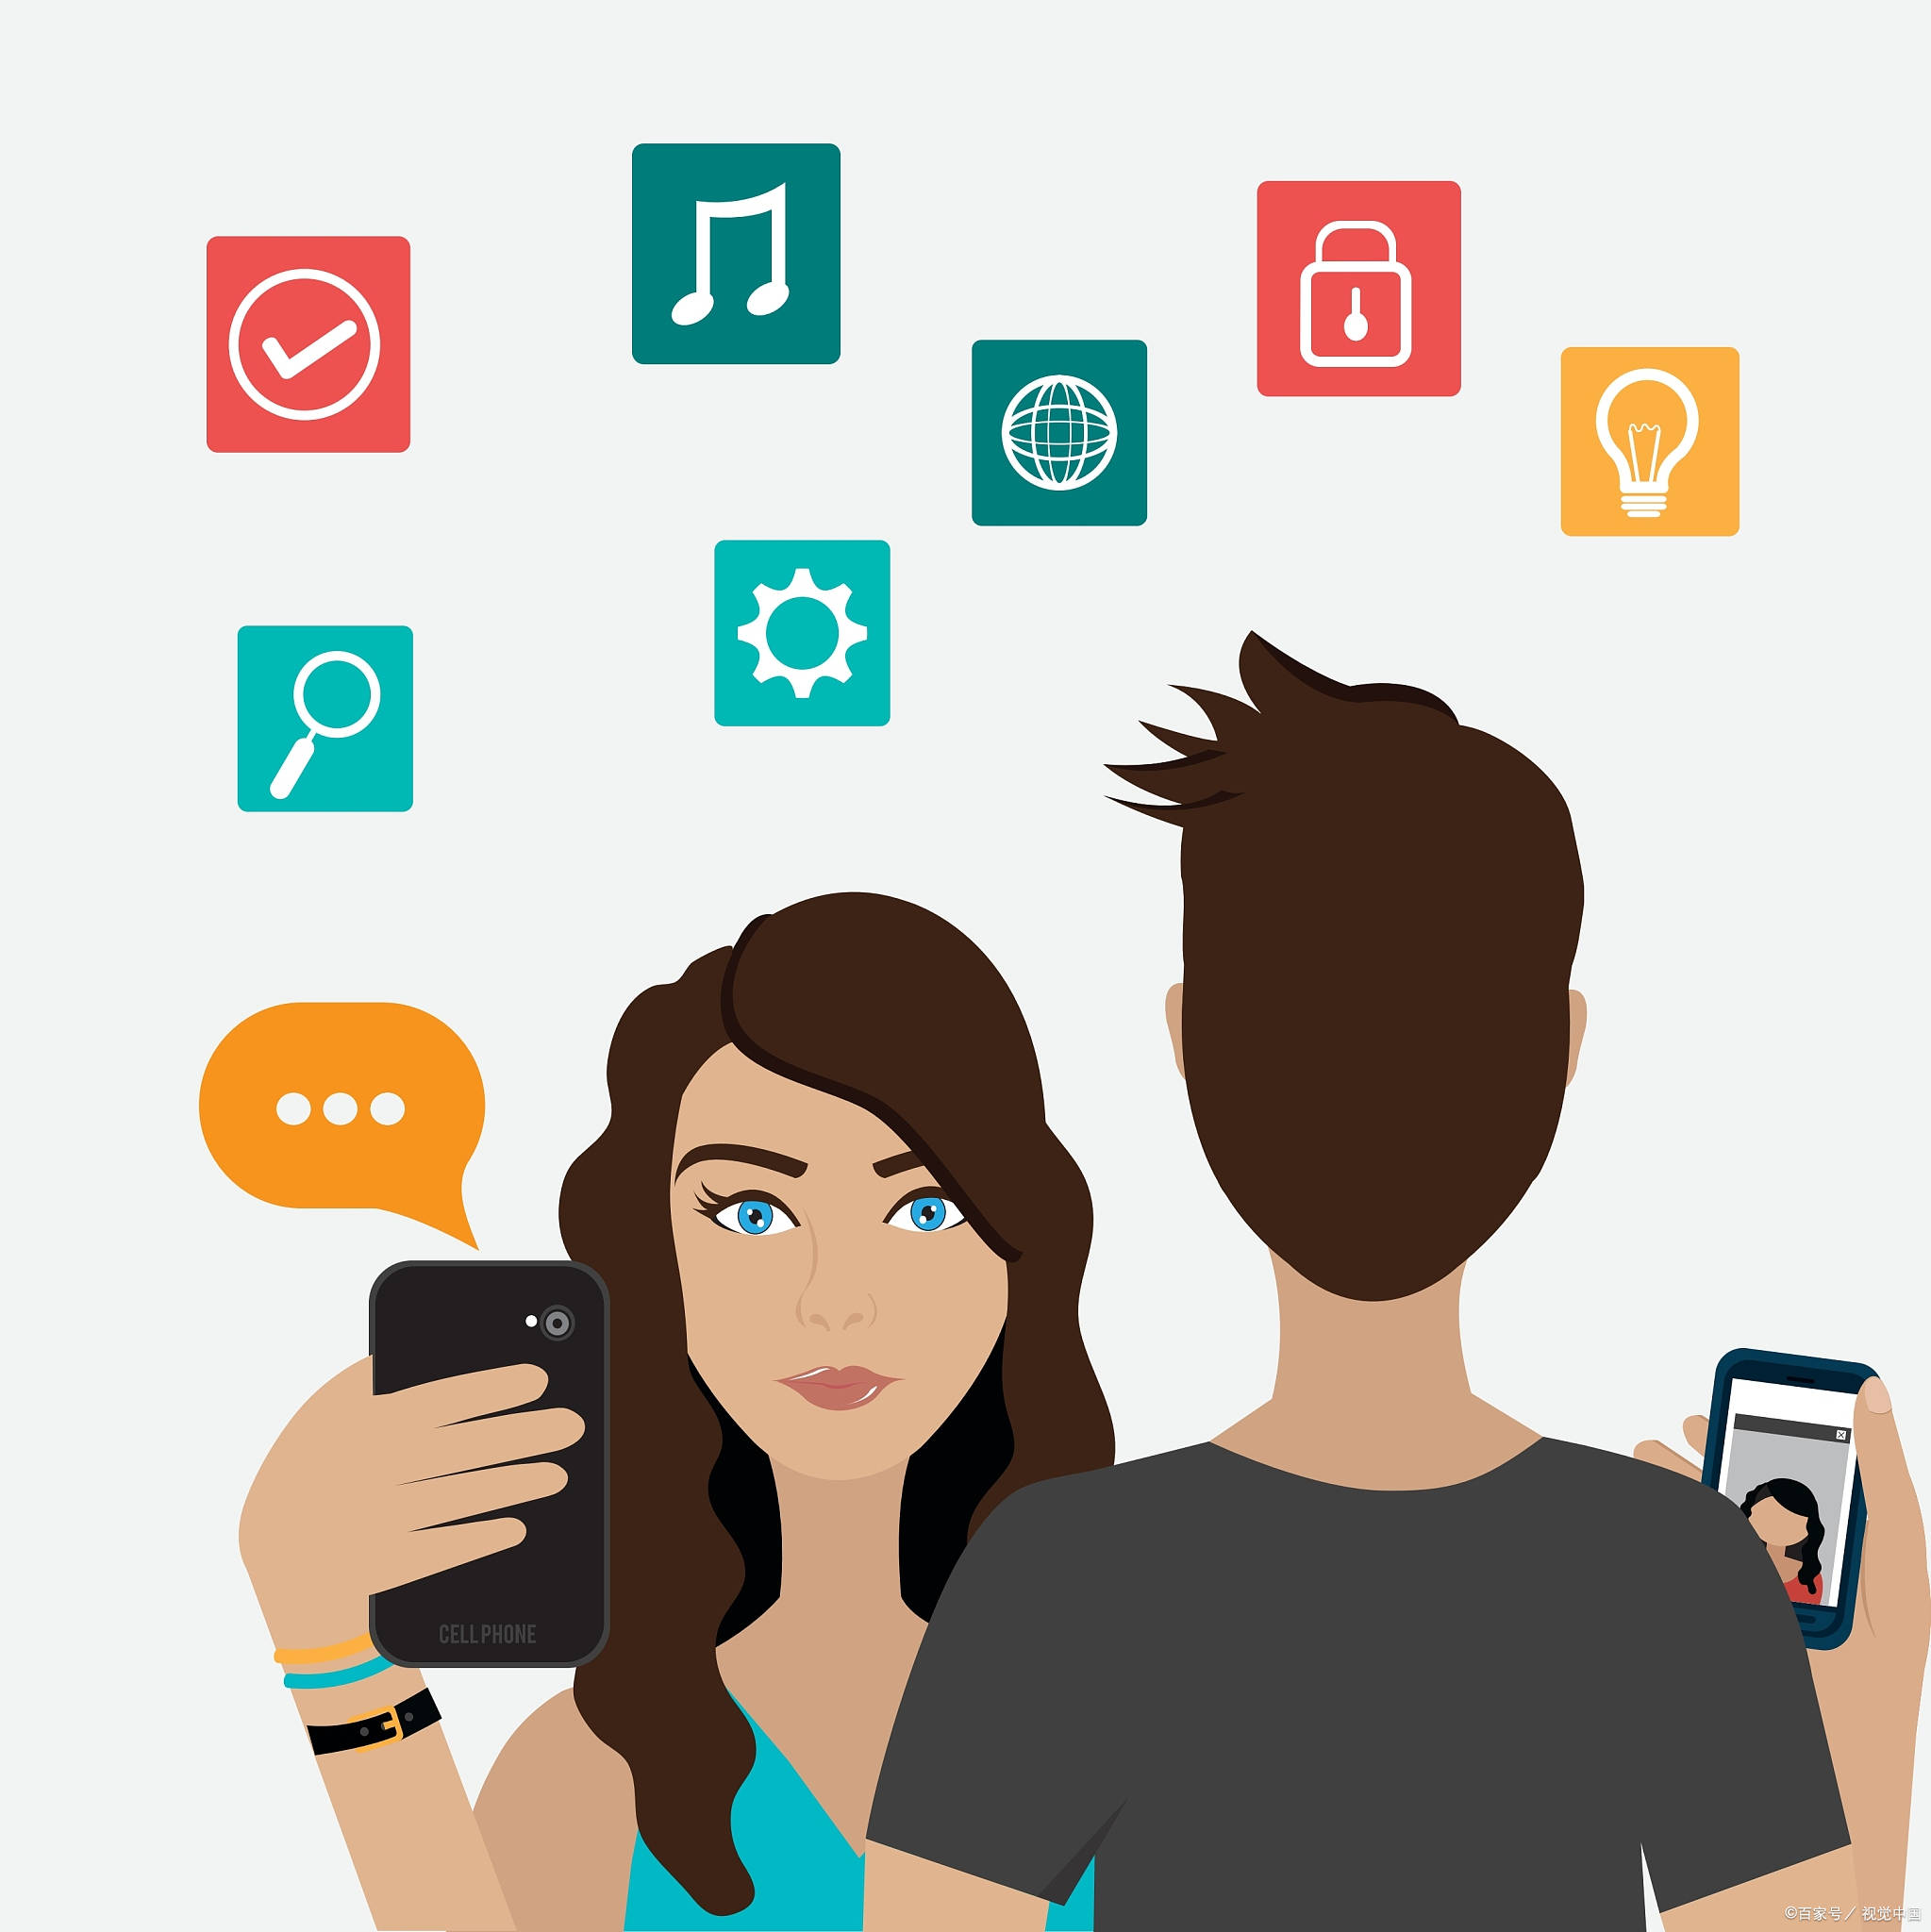 情侣手机:情侣之间会相互防着对方看手机吗？